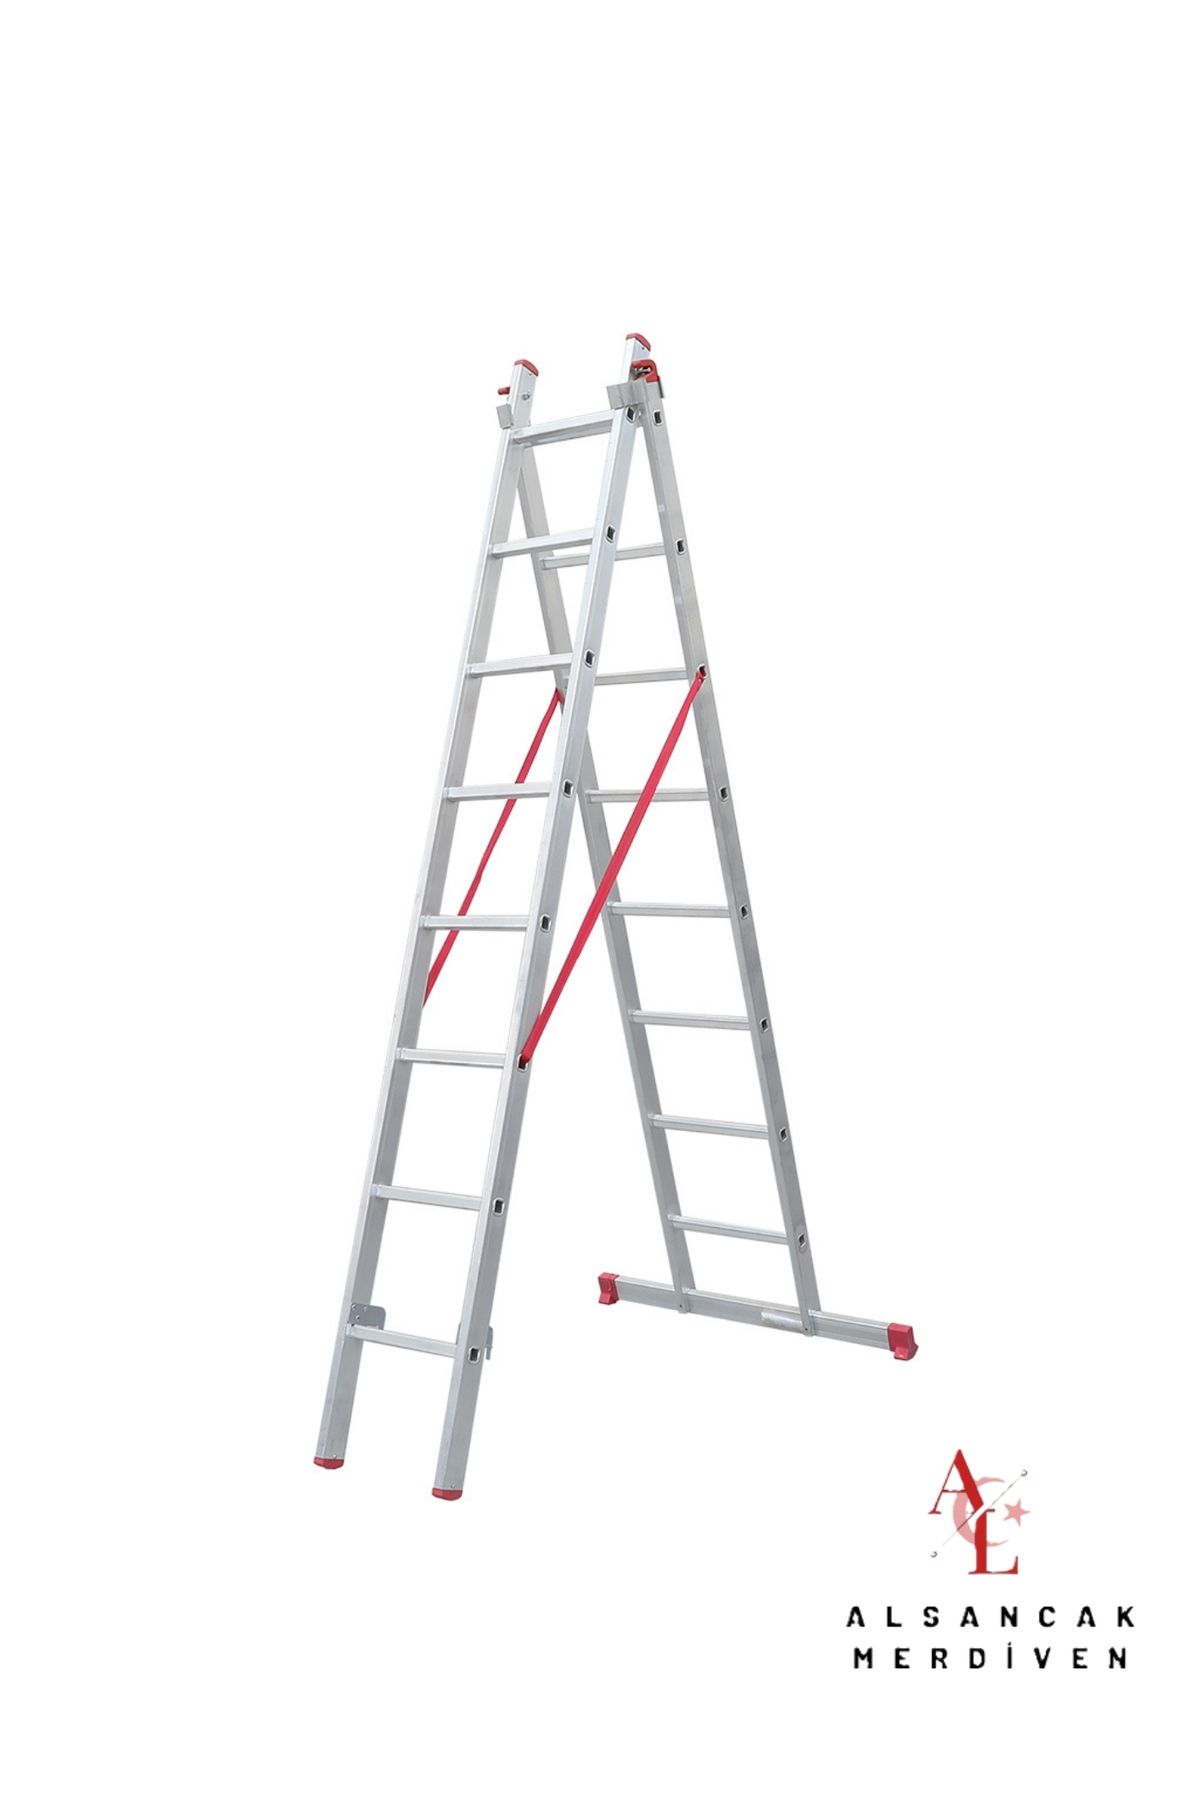 ALSANCAK MADENİ EŞYA 2X2.5 M A Tipi Endüstriyel Sürgülü Merdiven Ptt A tipi merdiven ALS-A2.5X2 ALSANCAK MERDİVEN